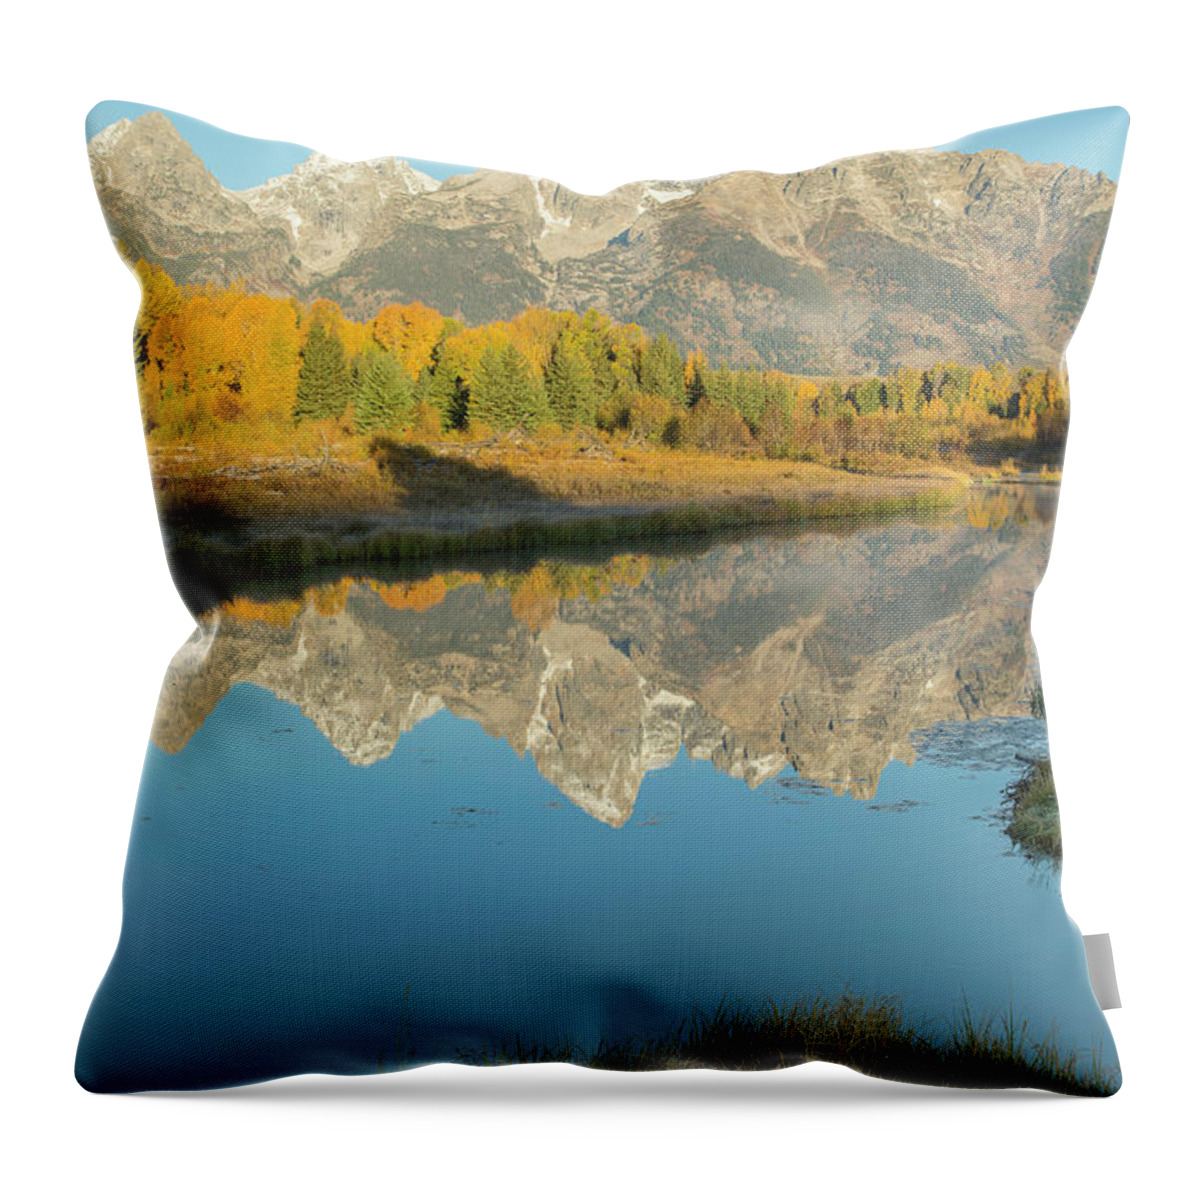 Grand Teton National Park Throw Pillow featuring the photograph Schwabacher Sunrise 2 by D Robert Franz